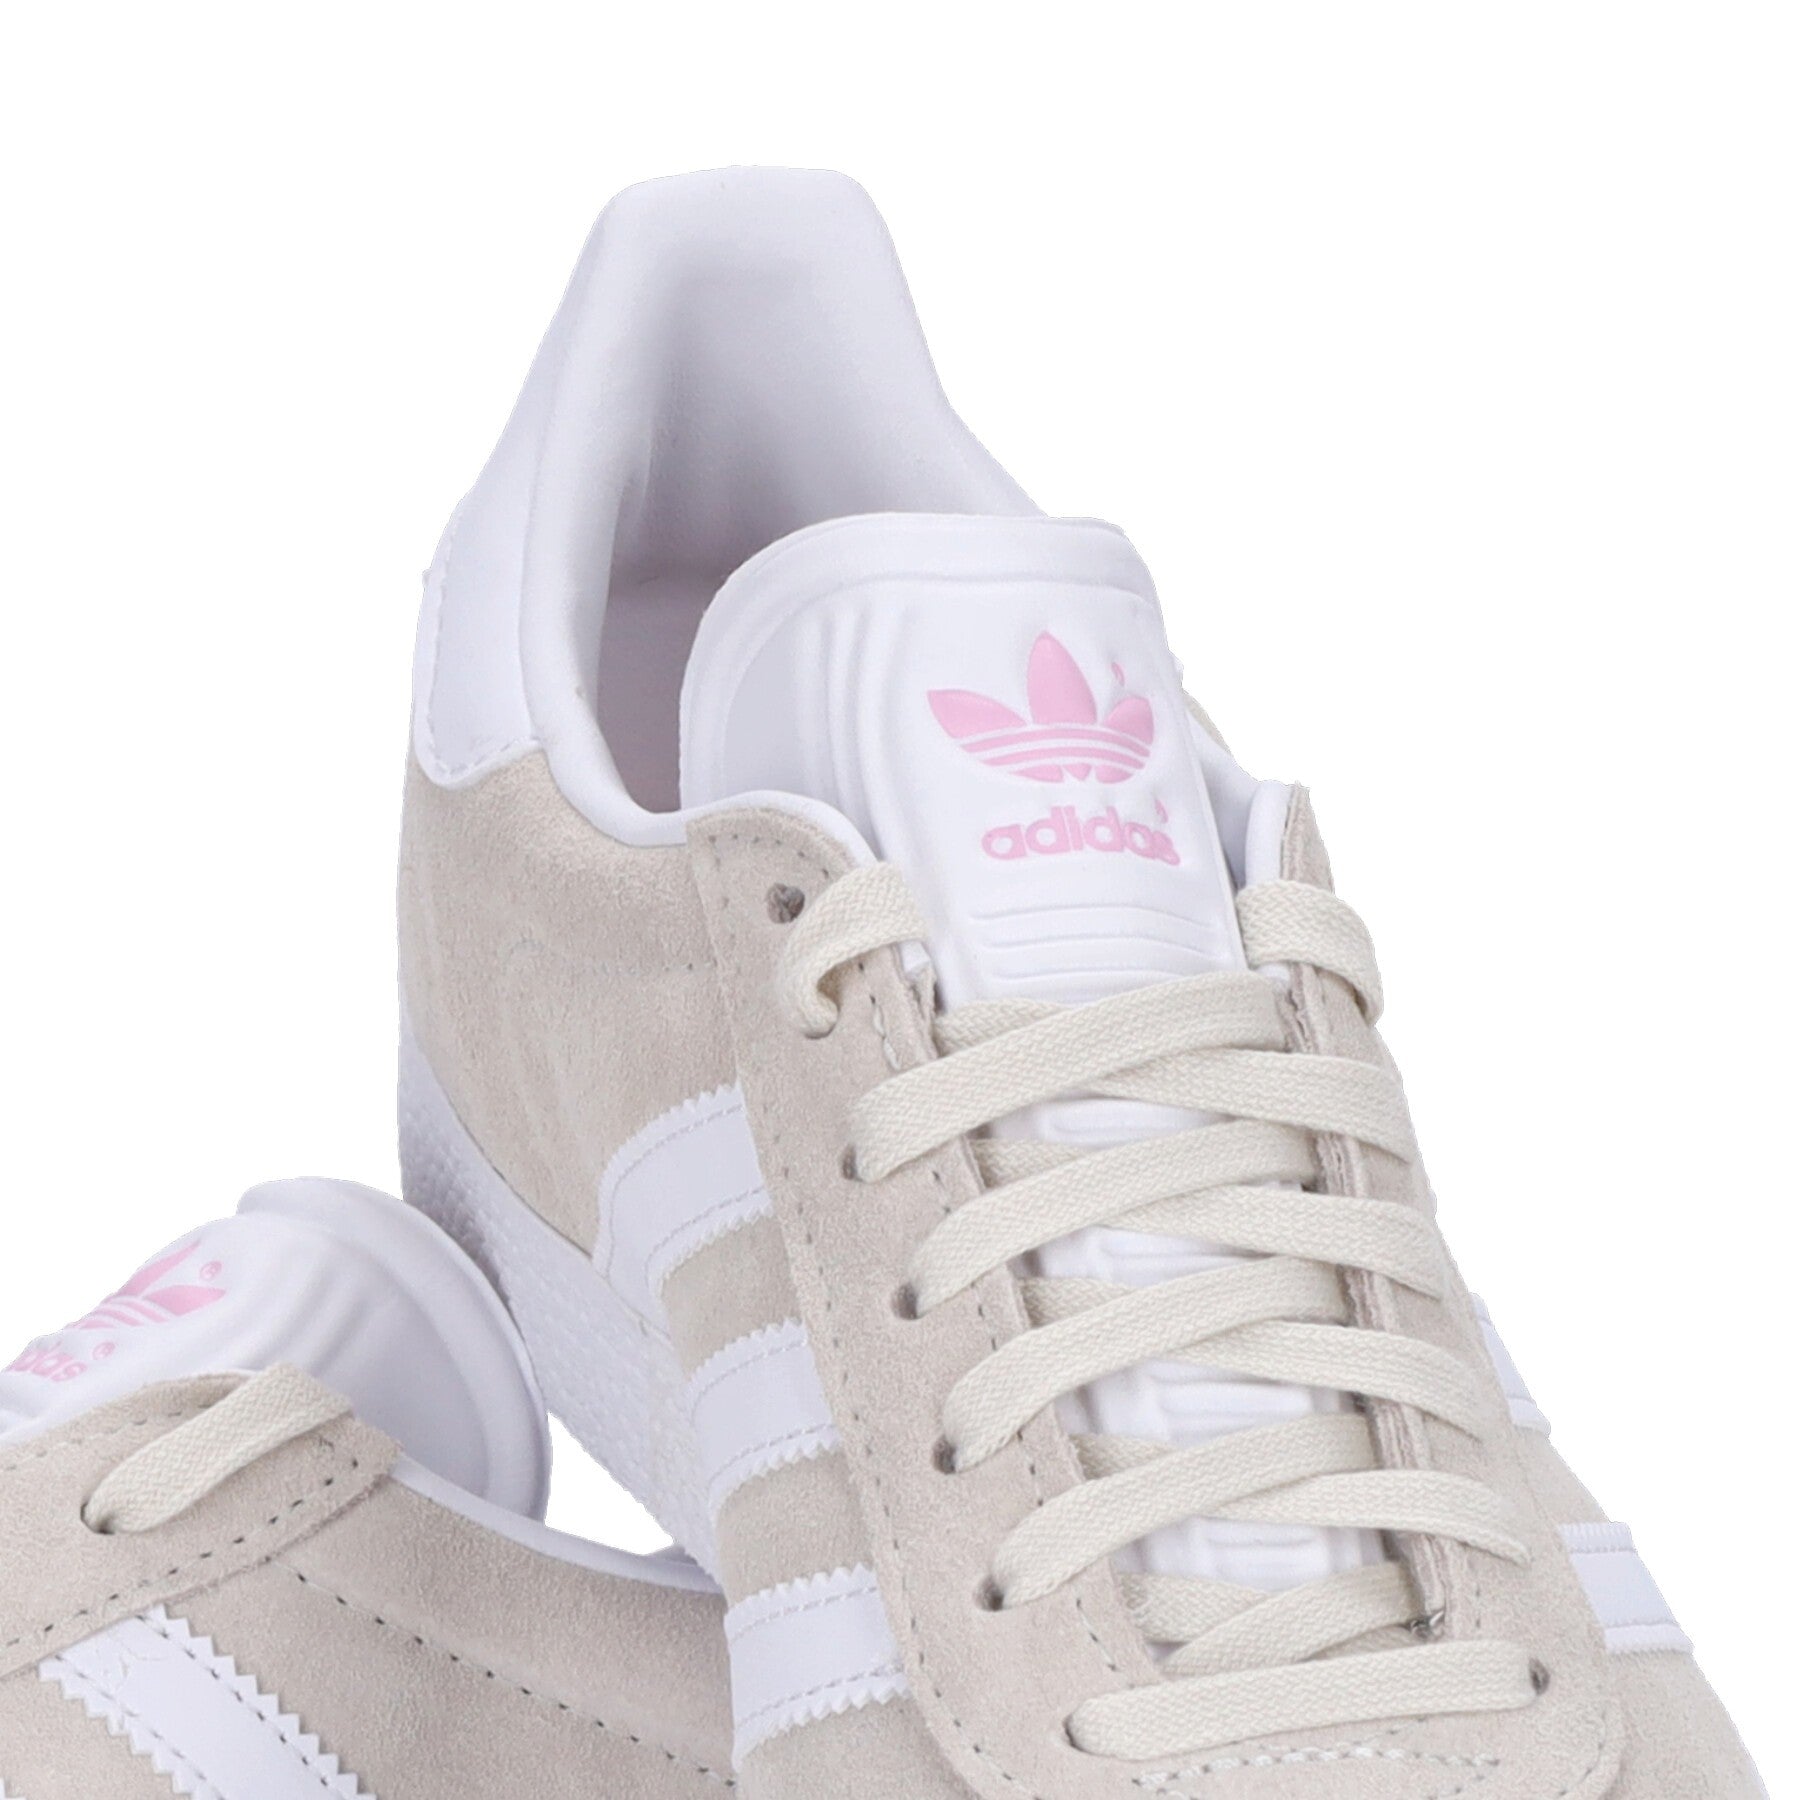 Gazelle W Women's Low Shoe Off White/cloud White/clear Pink